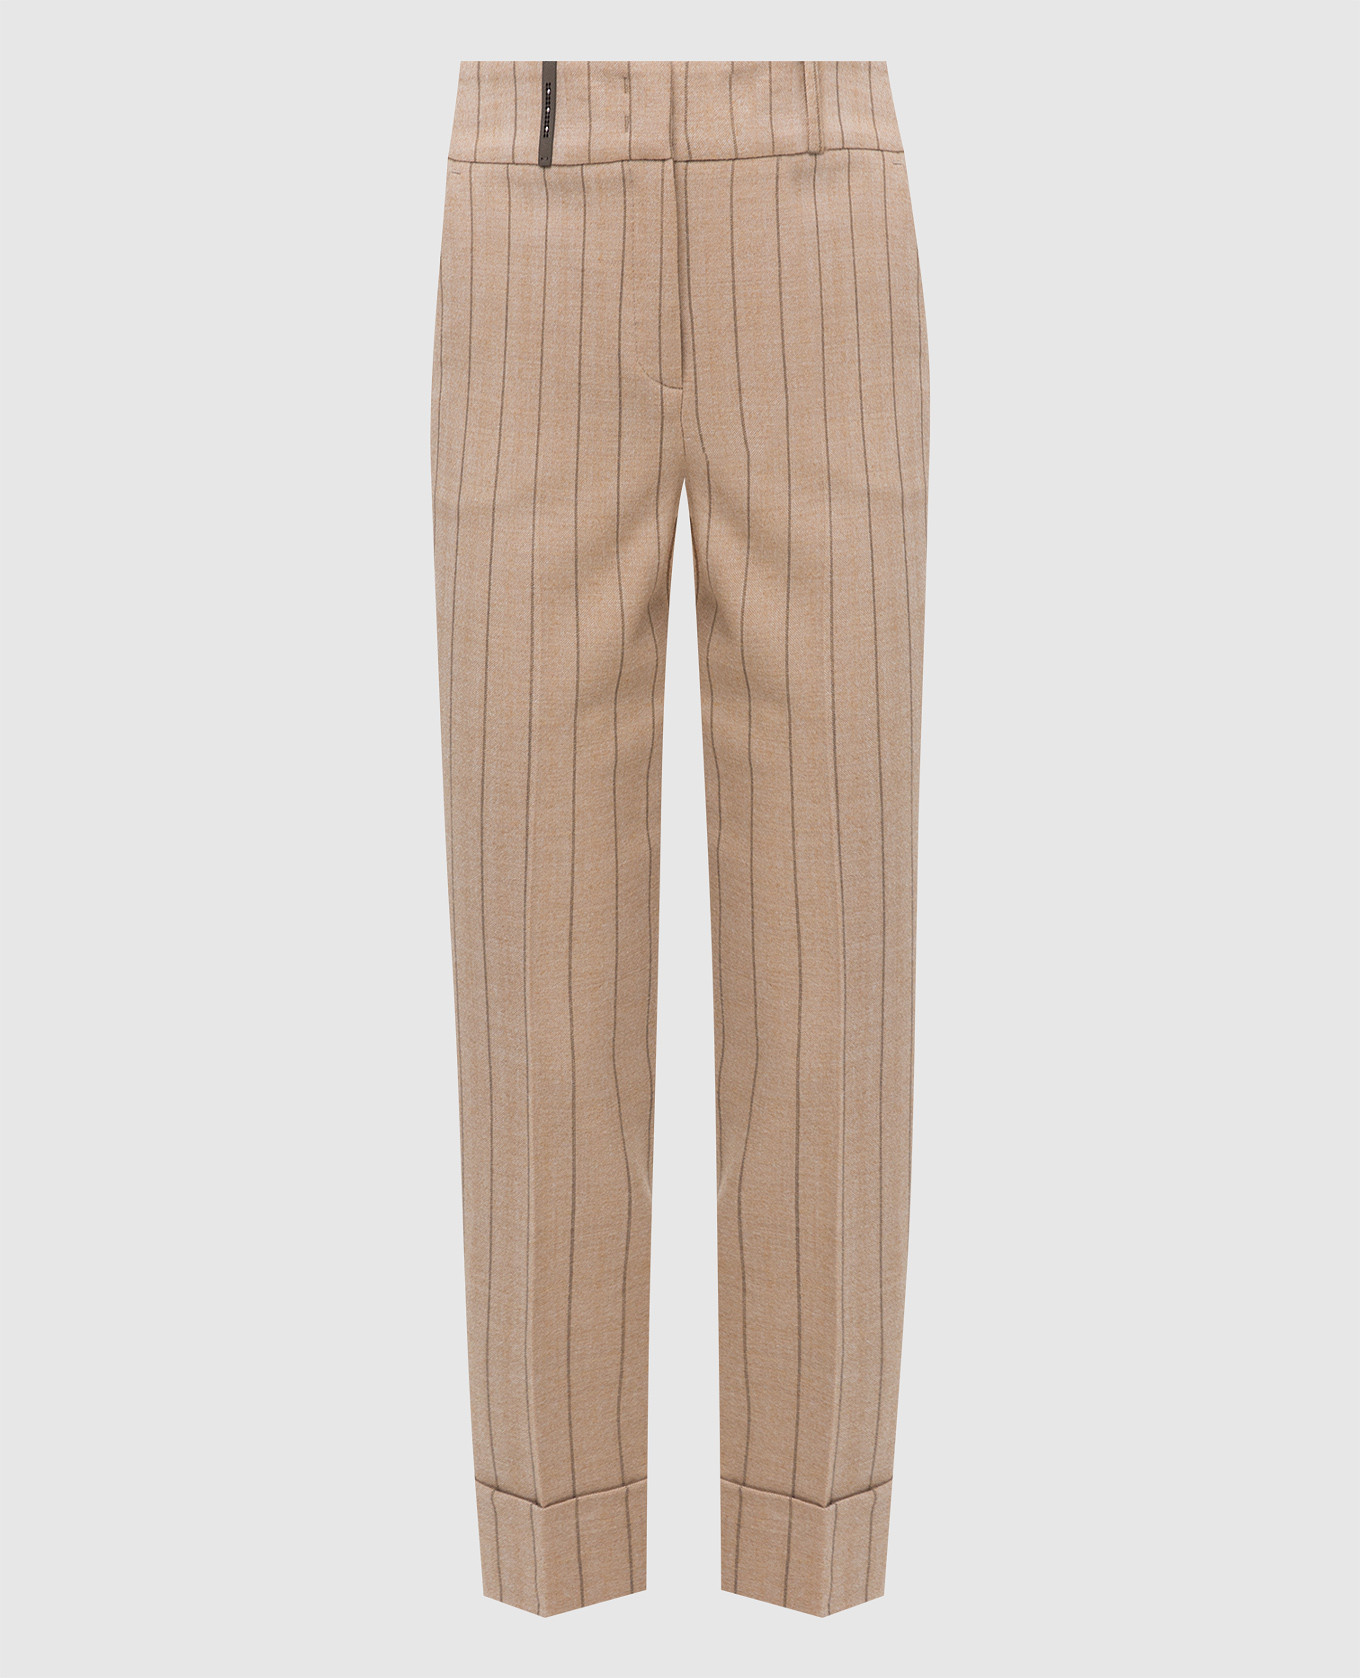 Beige striped wool trousers